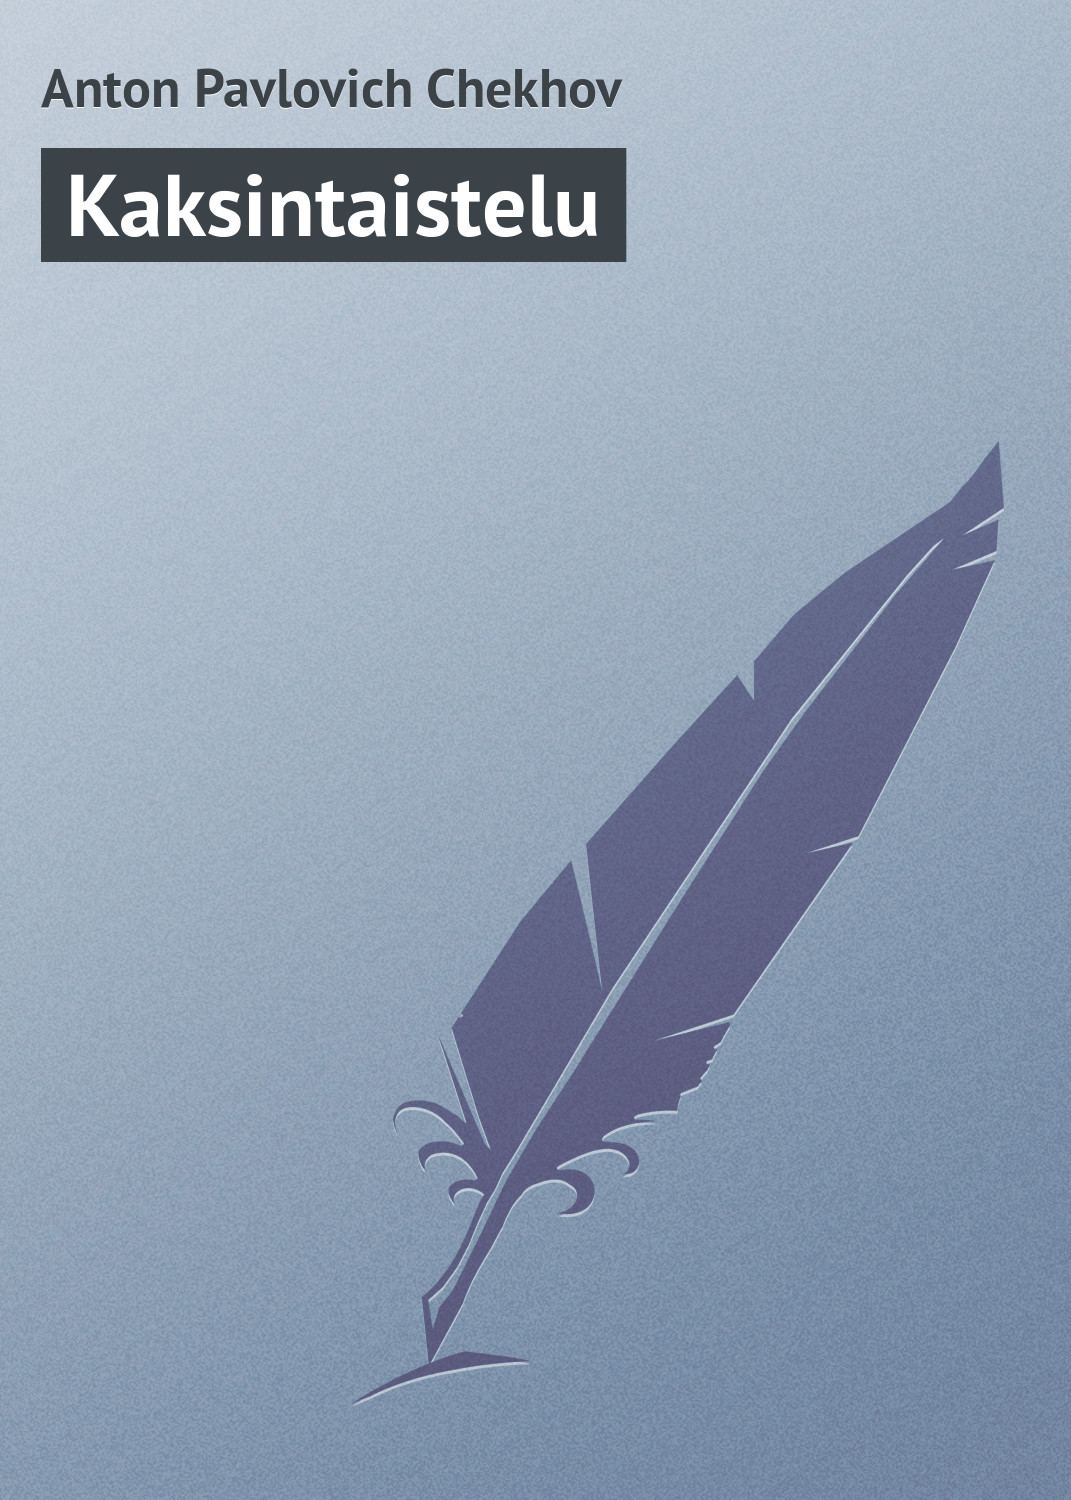 Книга Kaksintaistelu из серии , созданная Anton Chekhov, может относится к жанру Русская классика. Стоимость электронной книги Kaksintaistelu с идентификатором 23166547 составляет 5.99 руб.